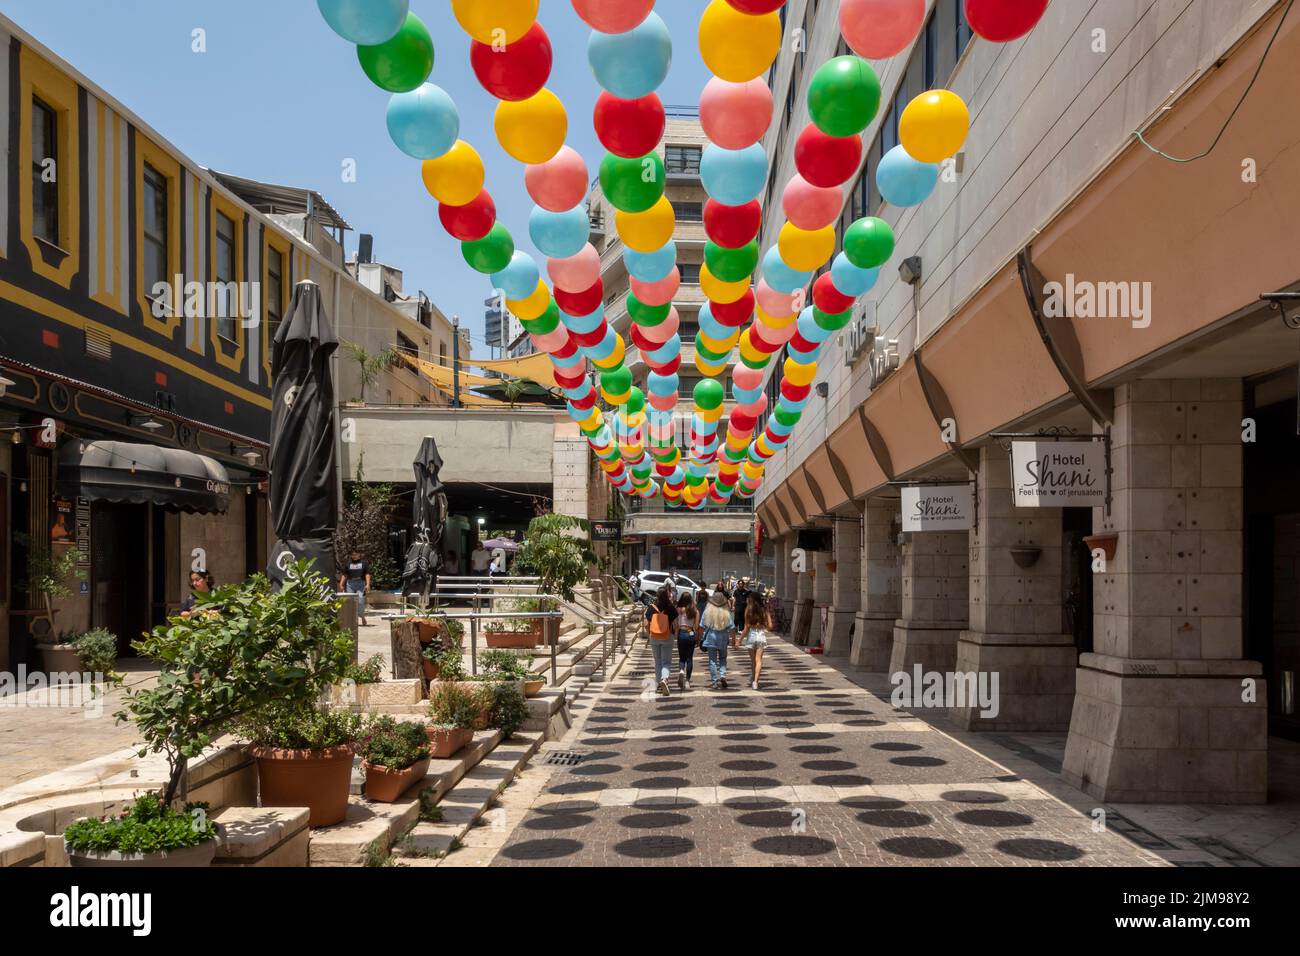 Globos de colores están suspendidos sobre un callejón peatonal en Jerusalén Oeste Israel Foto de stock